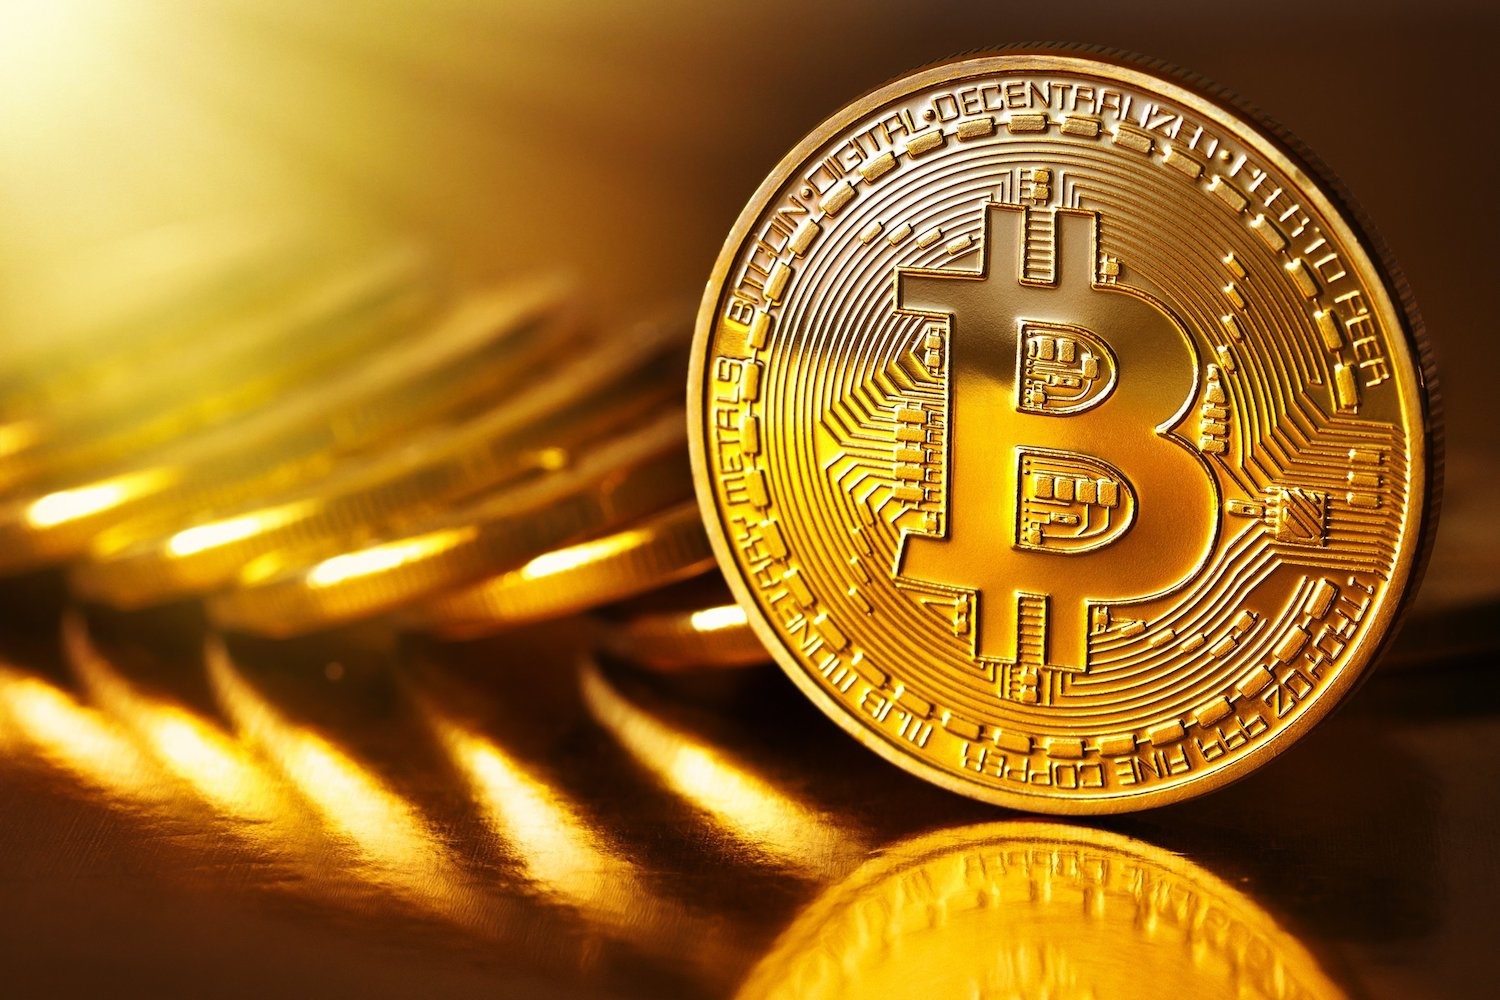 BTC Price Analysis 08/04: Bitcoin Bulls Regain Control Amid Resistance, $29k Next?